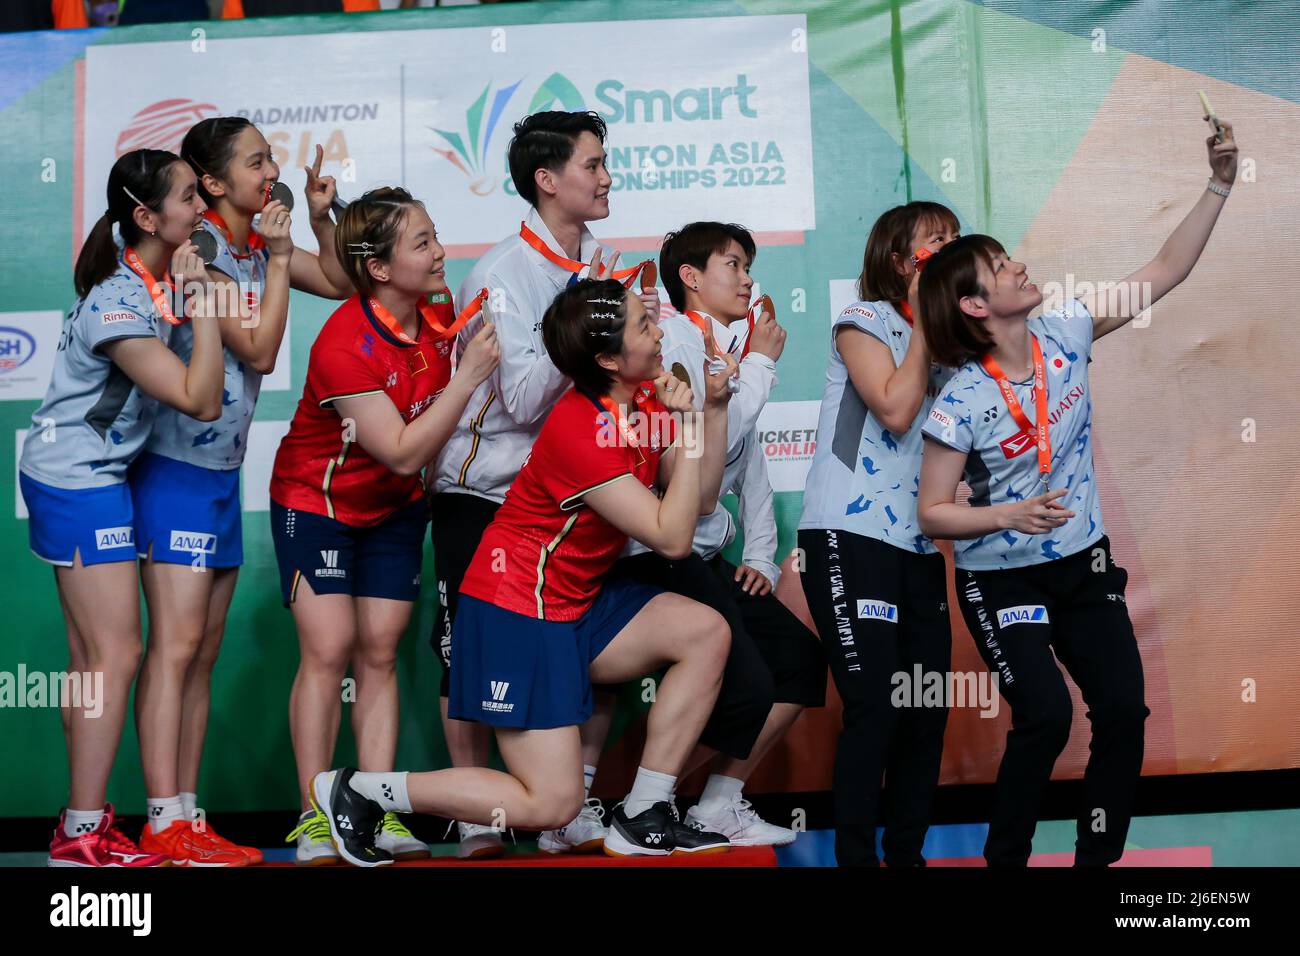 (220501) -- MANILA, 1. Mai 2022 (Xinhua) -- die Spieler nehmen Selfie während der Preisverleihung für die Damendoppel bei den Badminton Asia Championships 2022 in Manila, Philippinen, am 1. Mai 2022. (Xinhua/Rouelle Umali) Stockfoto